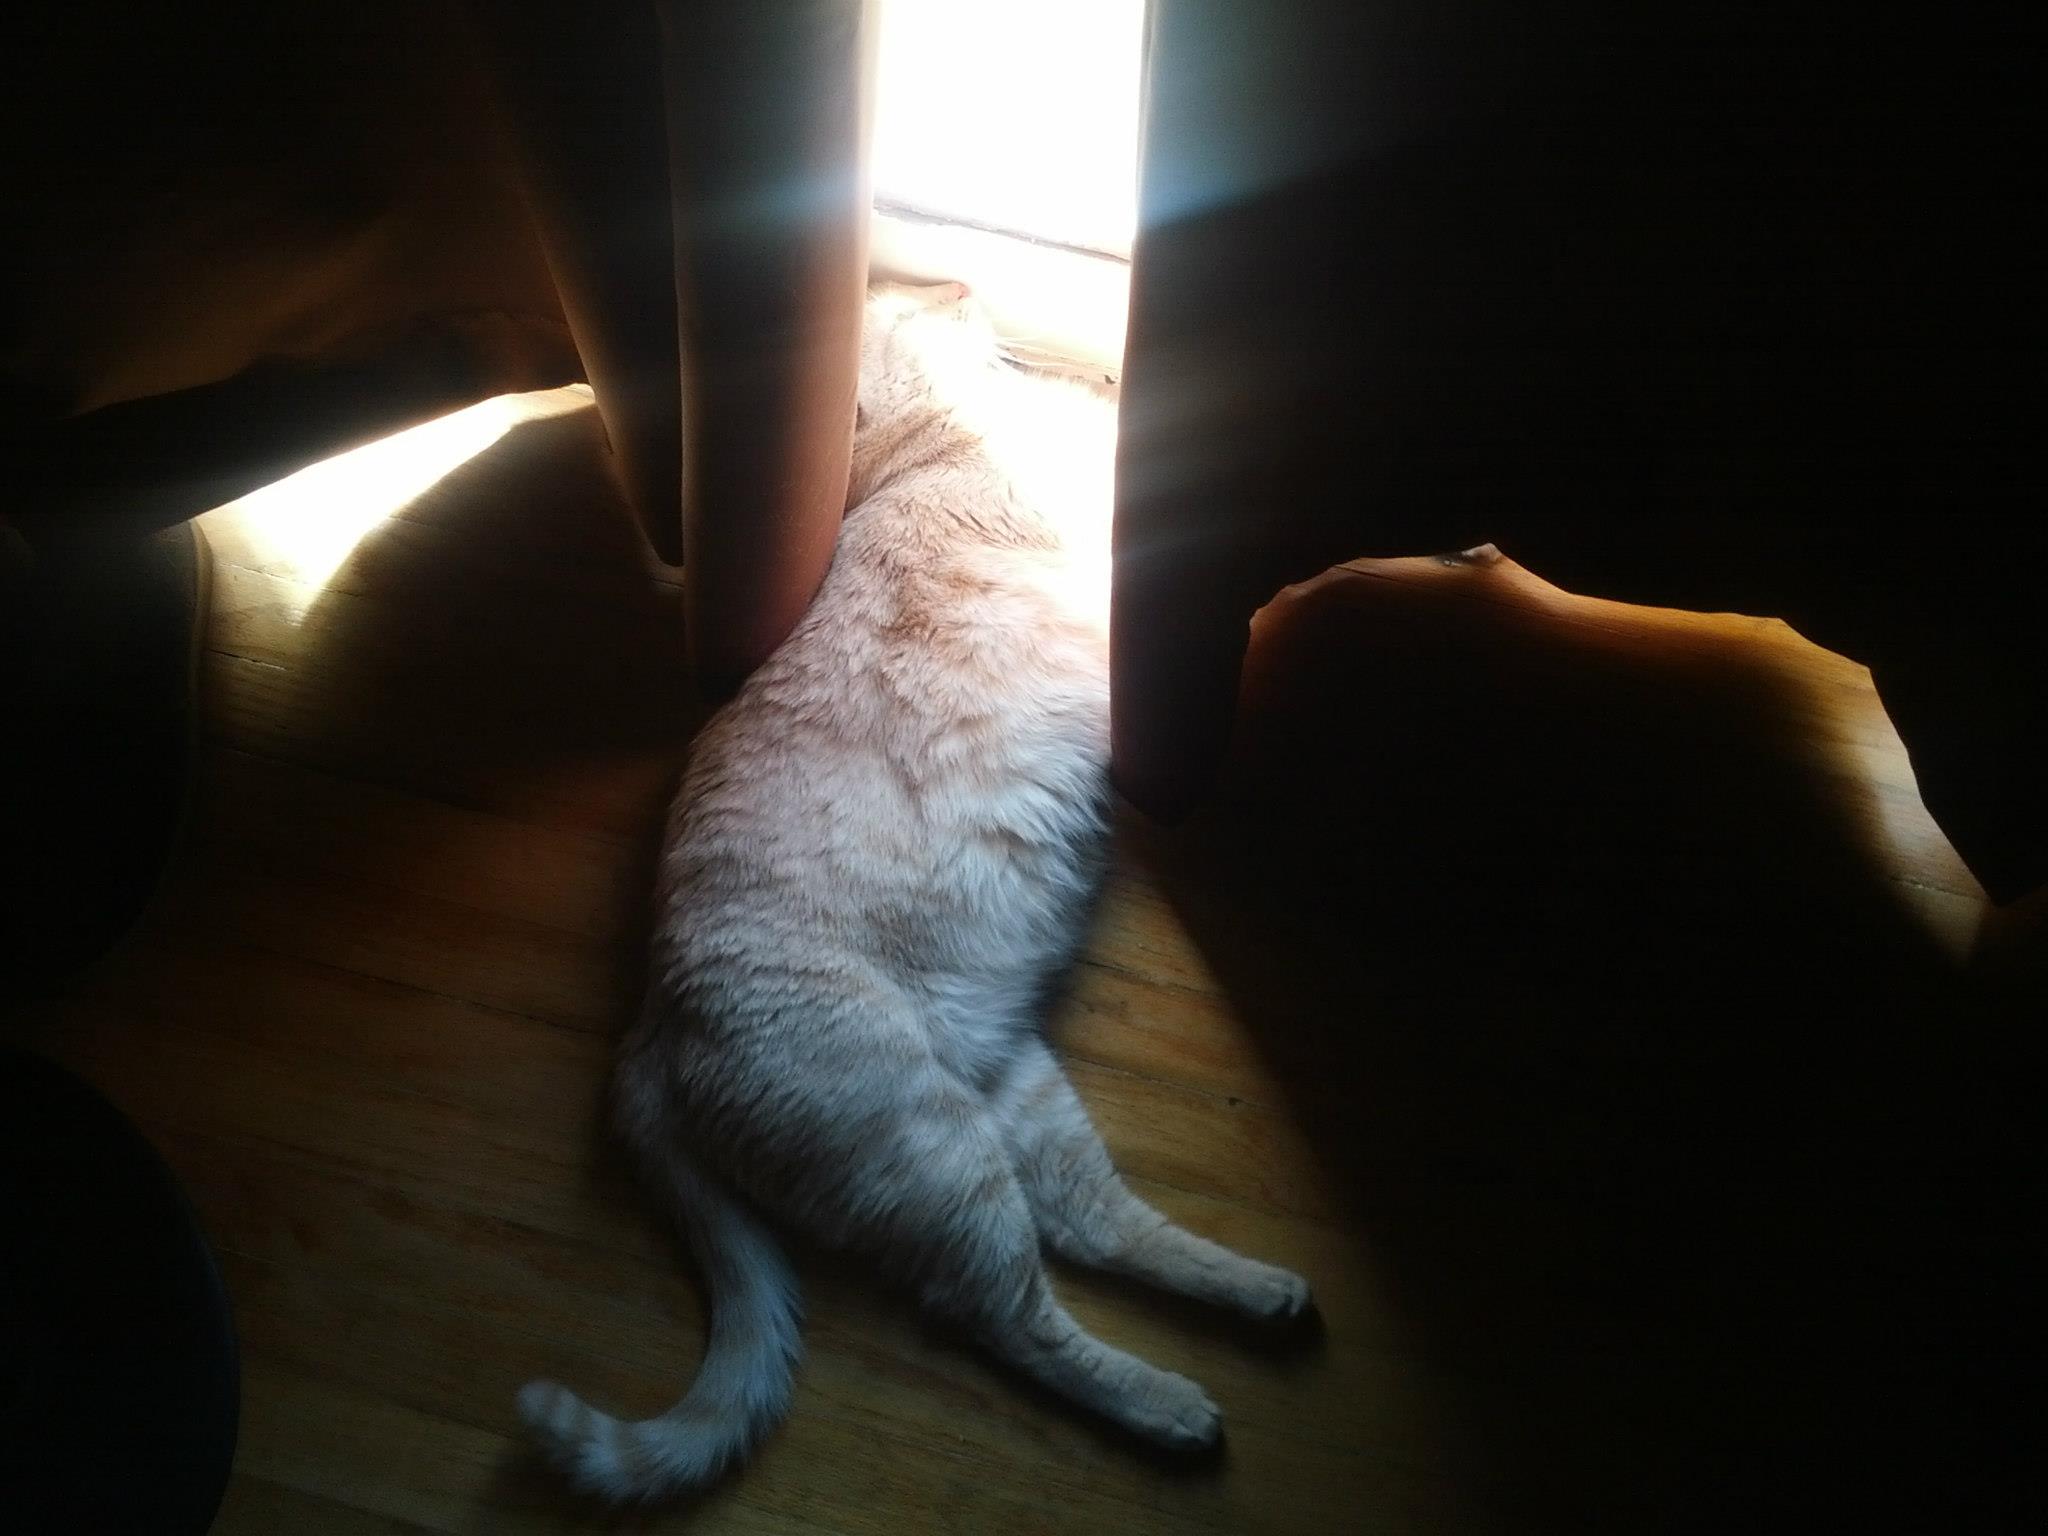 Ocelot absorbing sunlight